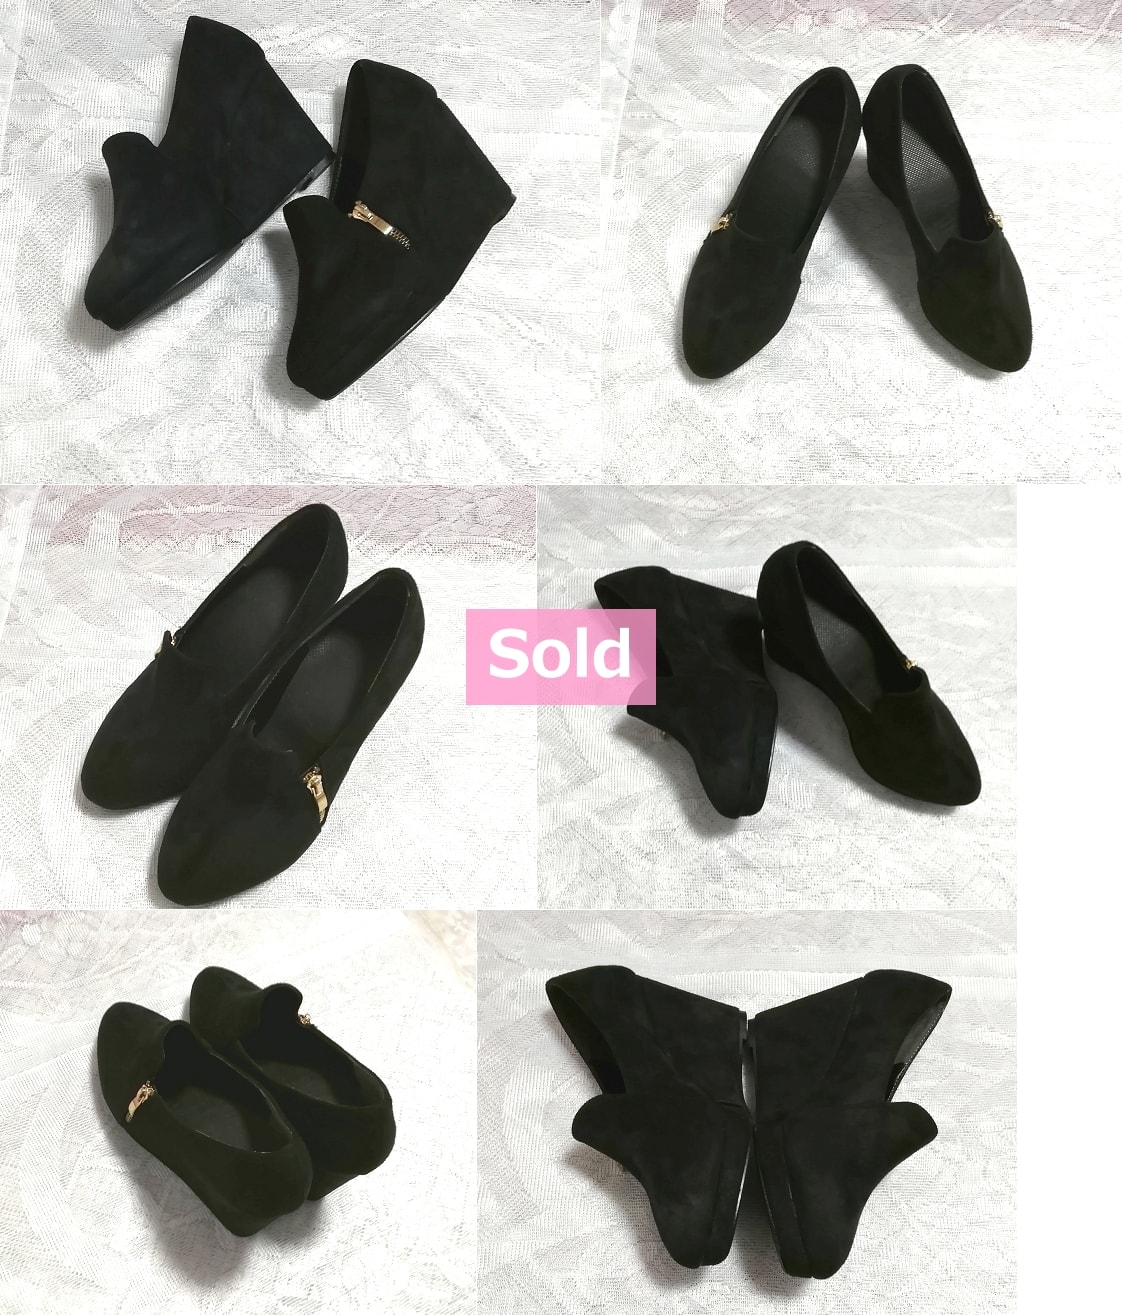 Negro Negro 10cm / Zapatos de mujer sencillos / Sandalias / Tacones altos / Zapatos de habitación Negro 3.93 en sandalia de zapatos de mujer sencillos de fondo grueso